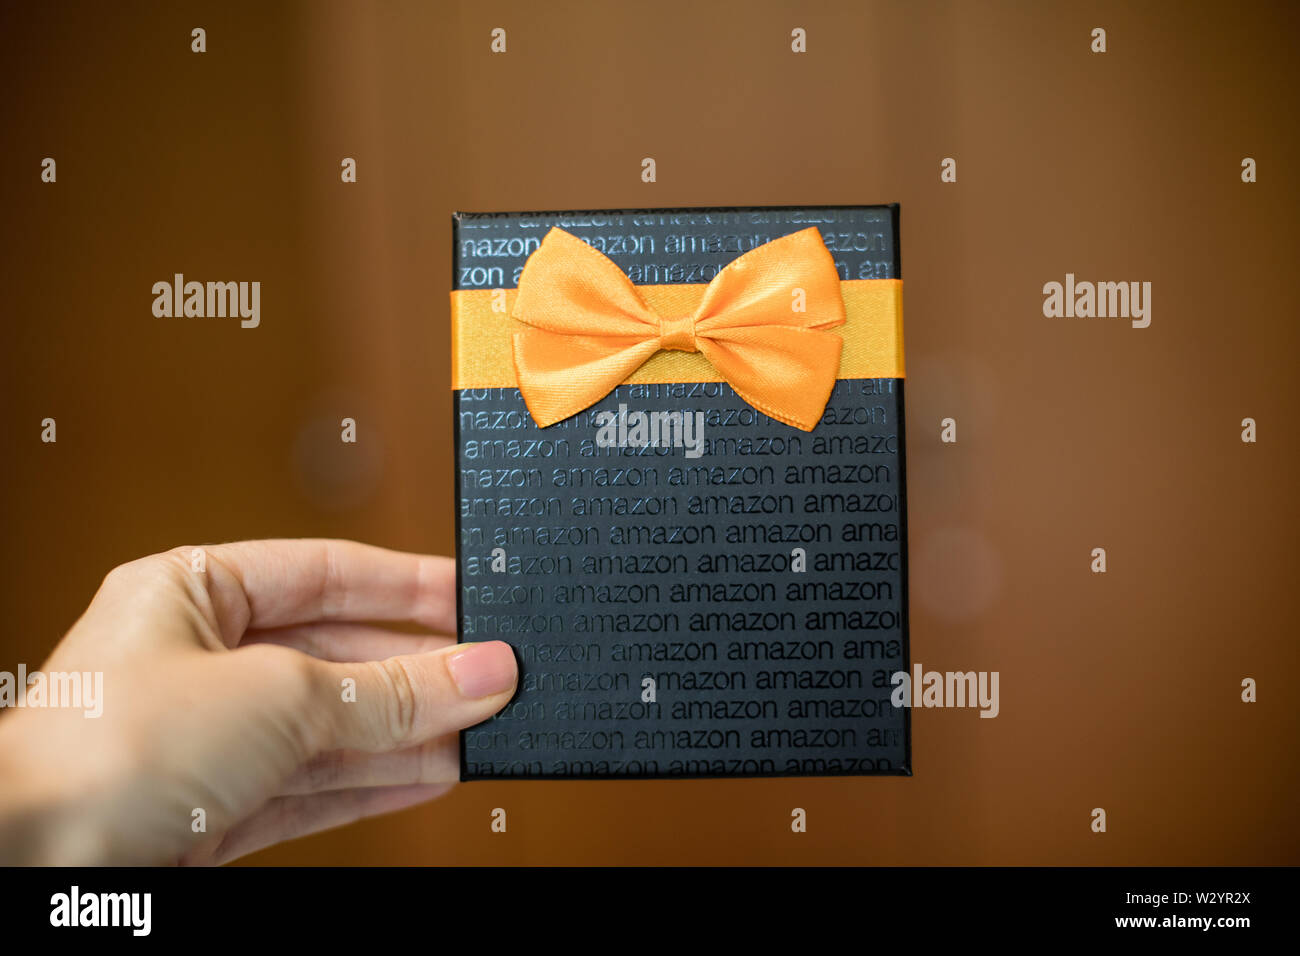 Washington, D.C. / USA - 10 juillet 2019 : une carte-cadeau de 50 $ Amazon  permet au bénéficiaire d'acheter des éléments de l'Amazon.com site web  Photo Stock - Alamy